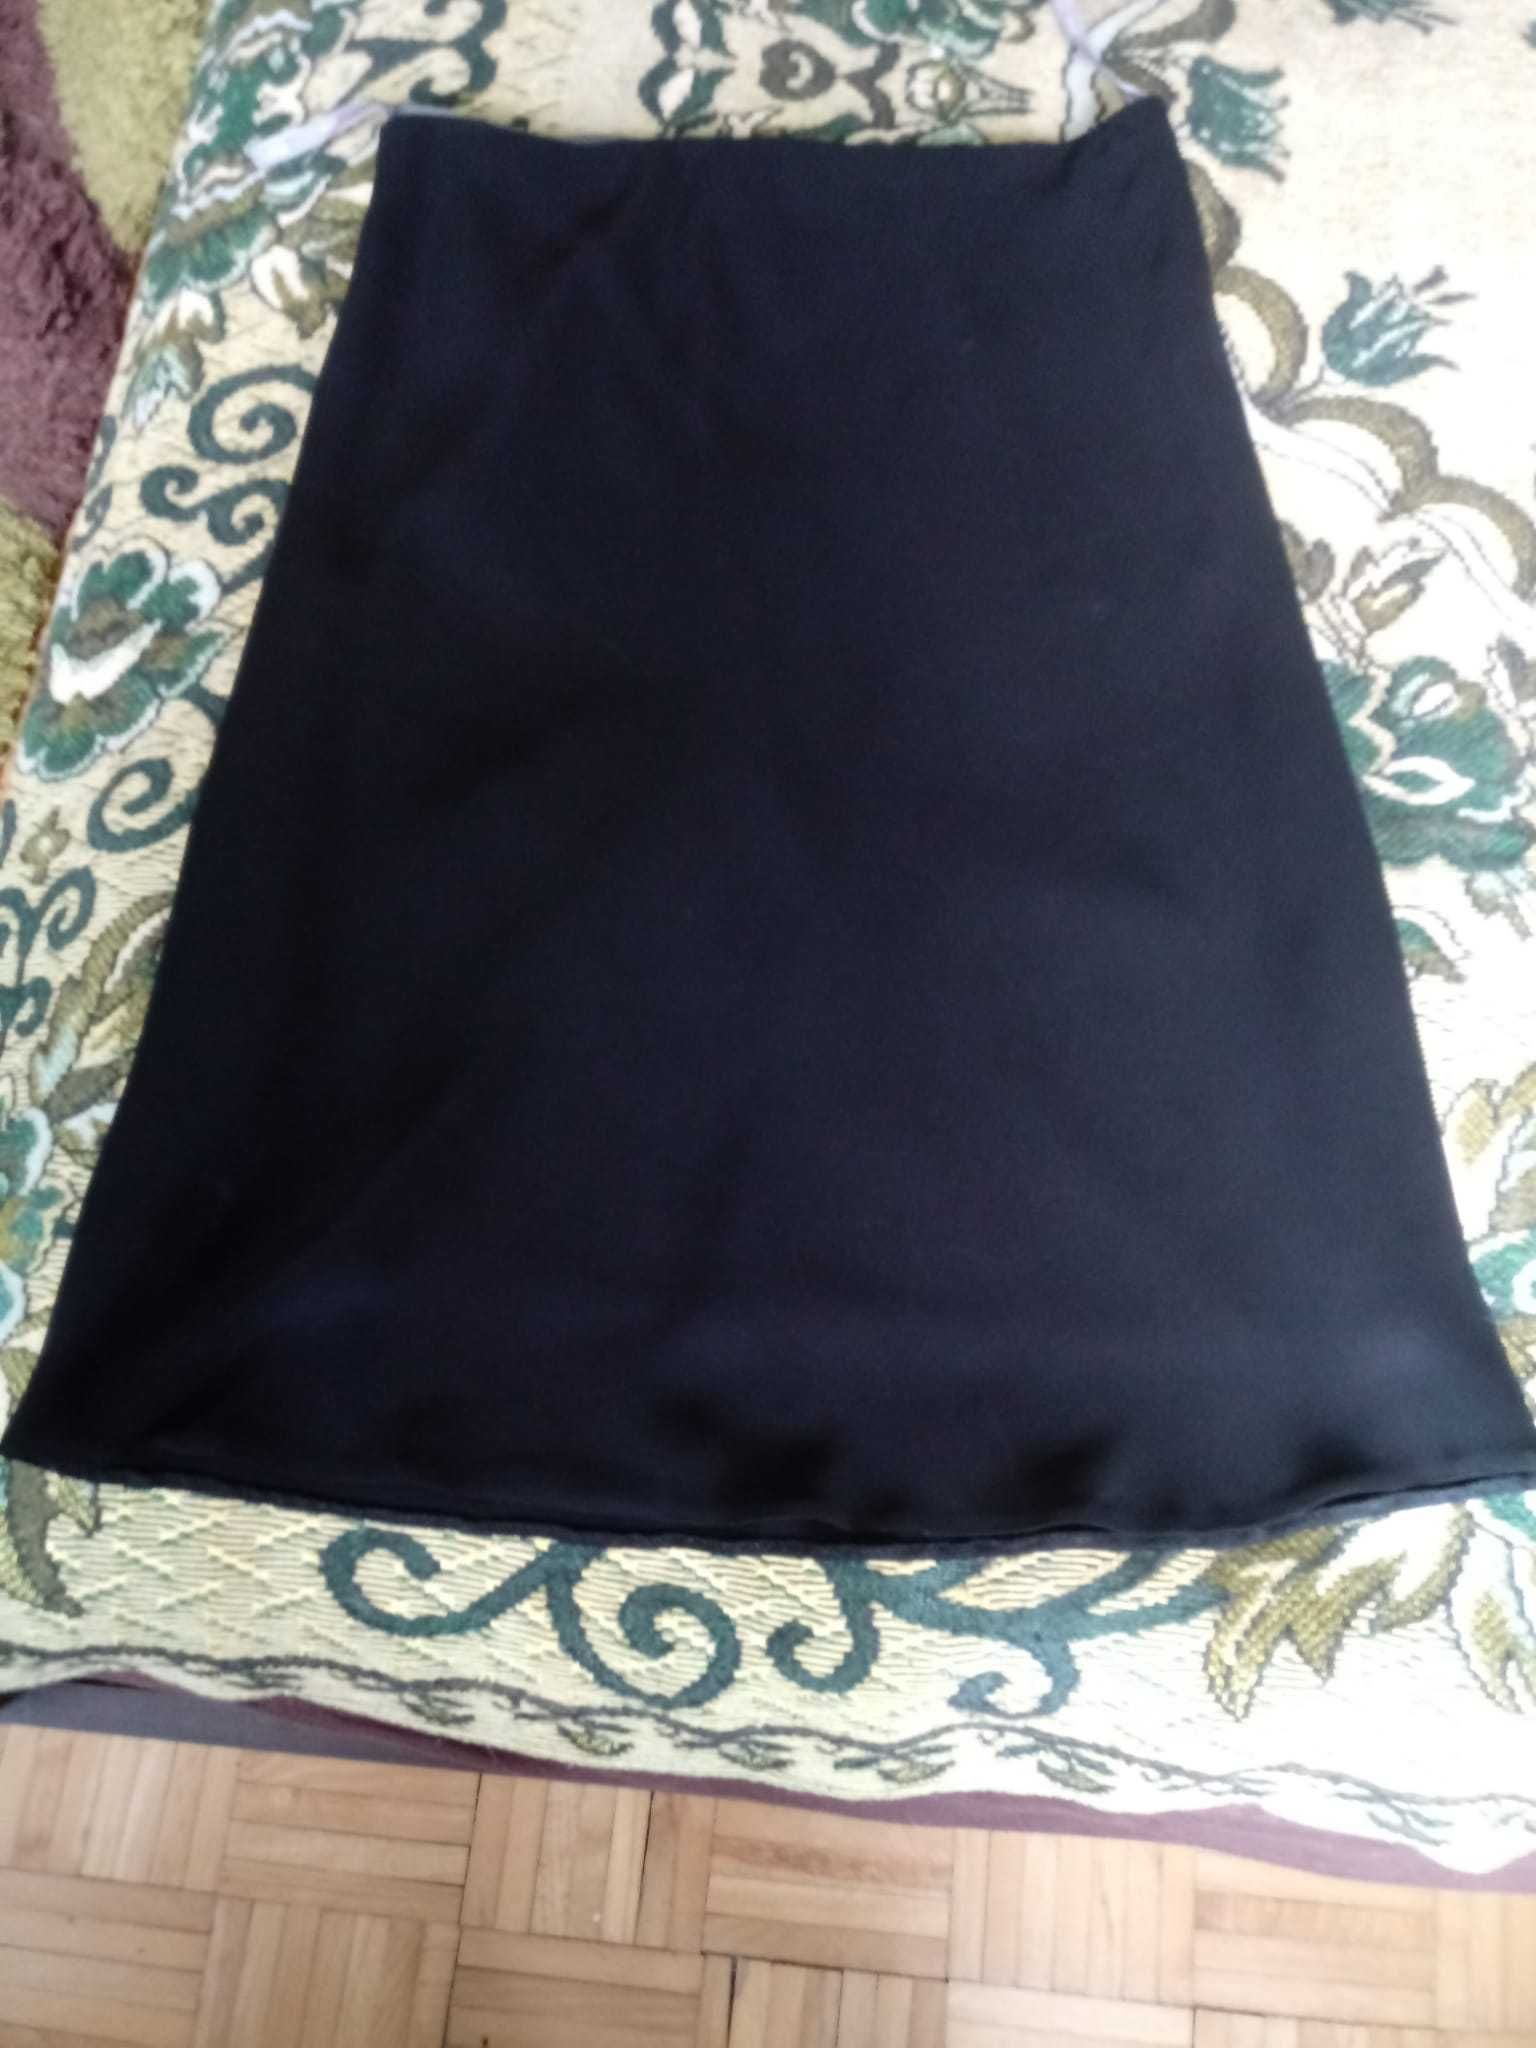 spódnica damska czarna rozmiar 14 firmy spirit